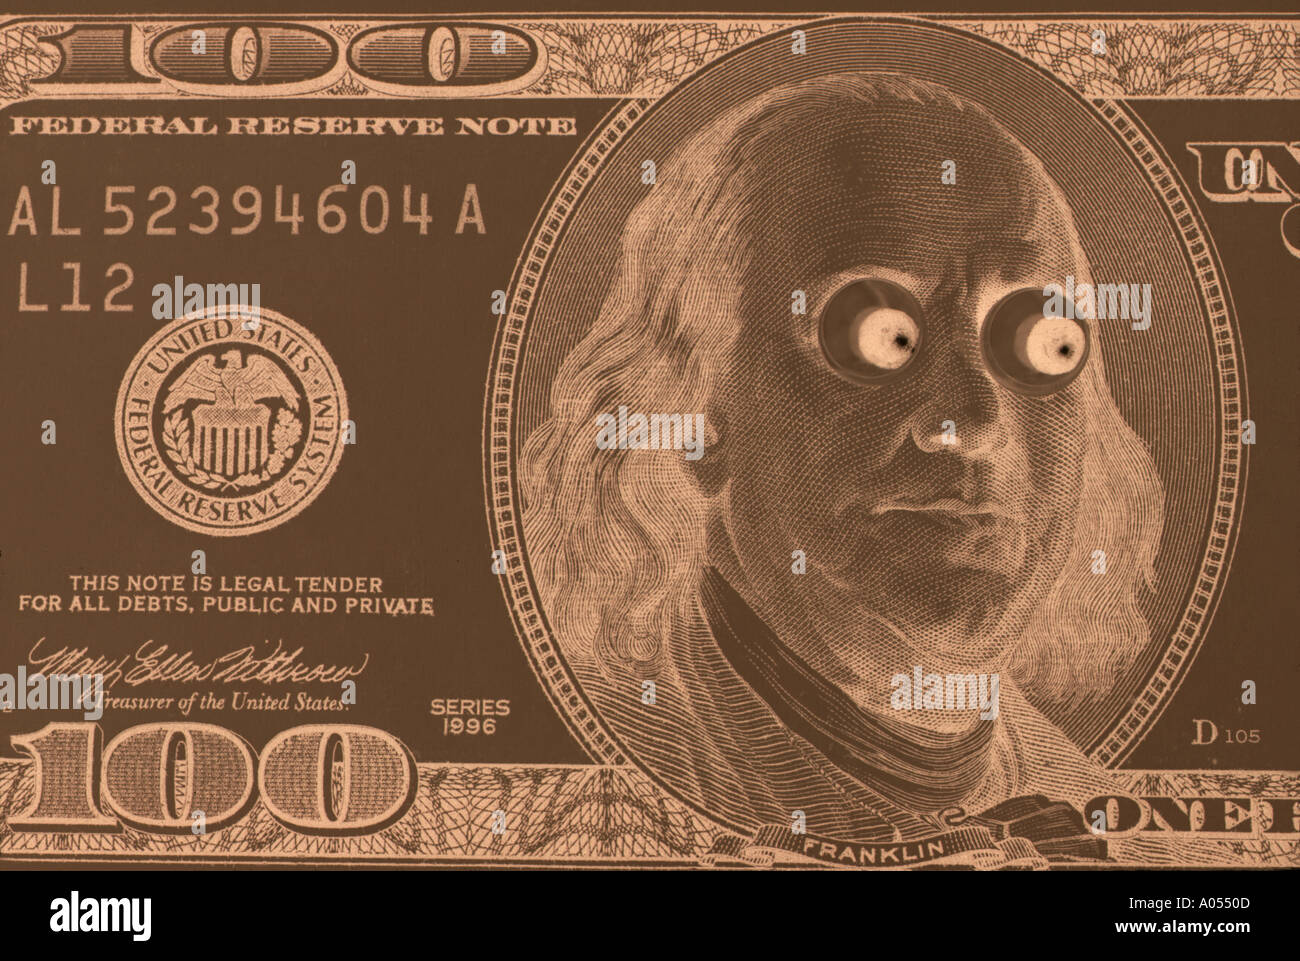 United States One Hundred Dollar Bill Ben Franklin avec des yeux exorbités Sépia Image négative Close up Banque D'Images